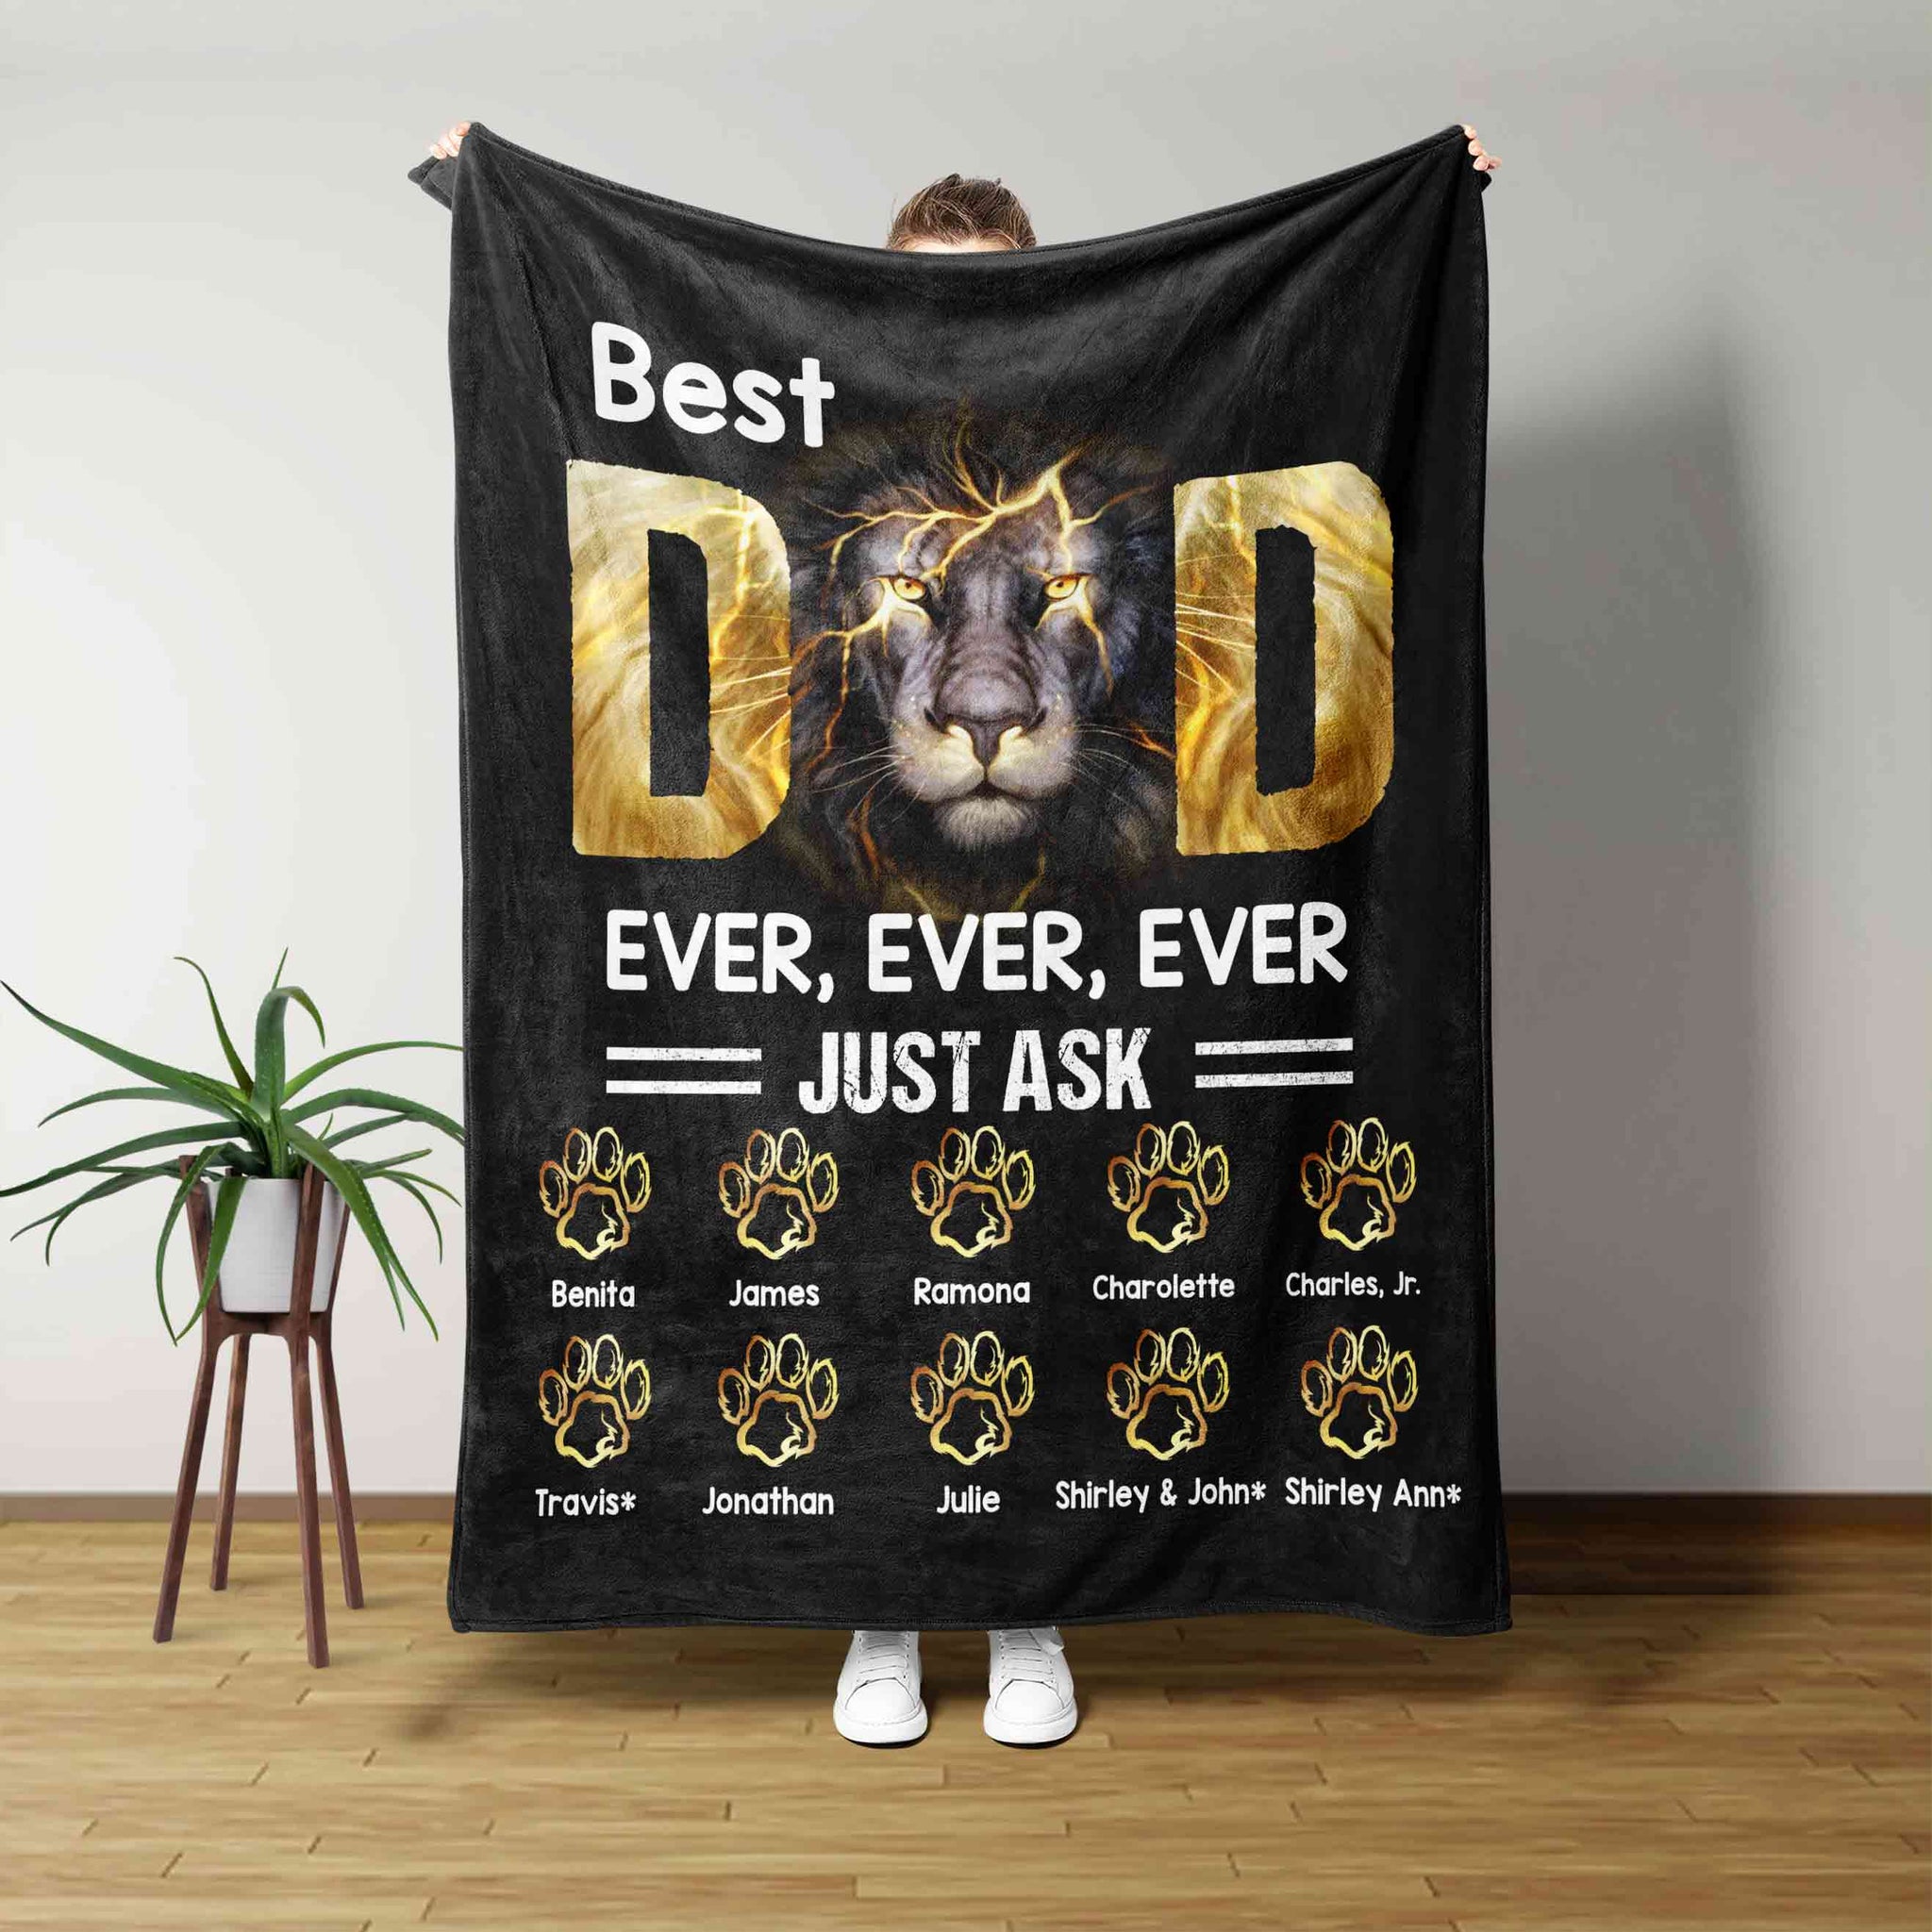 Best Dad Ever Blanket, Dad Blanket, Lion Blanket, Custom Name Blanket, Family Blanket, Gift Blanket